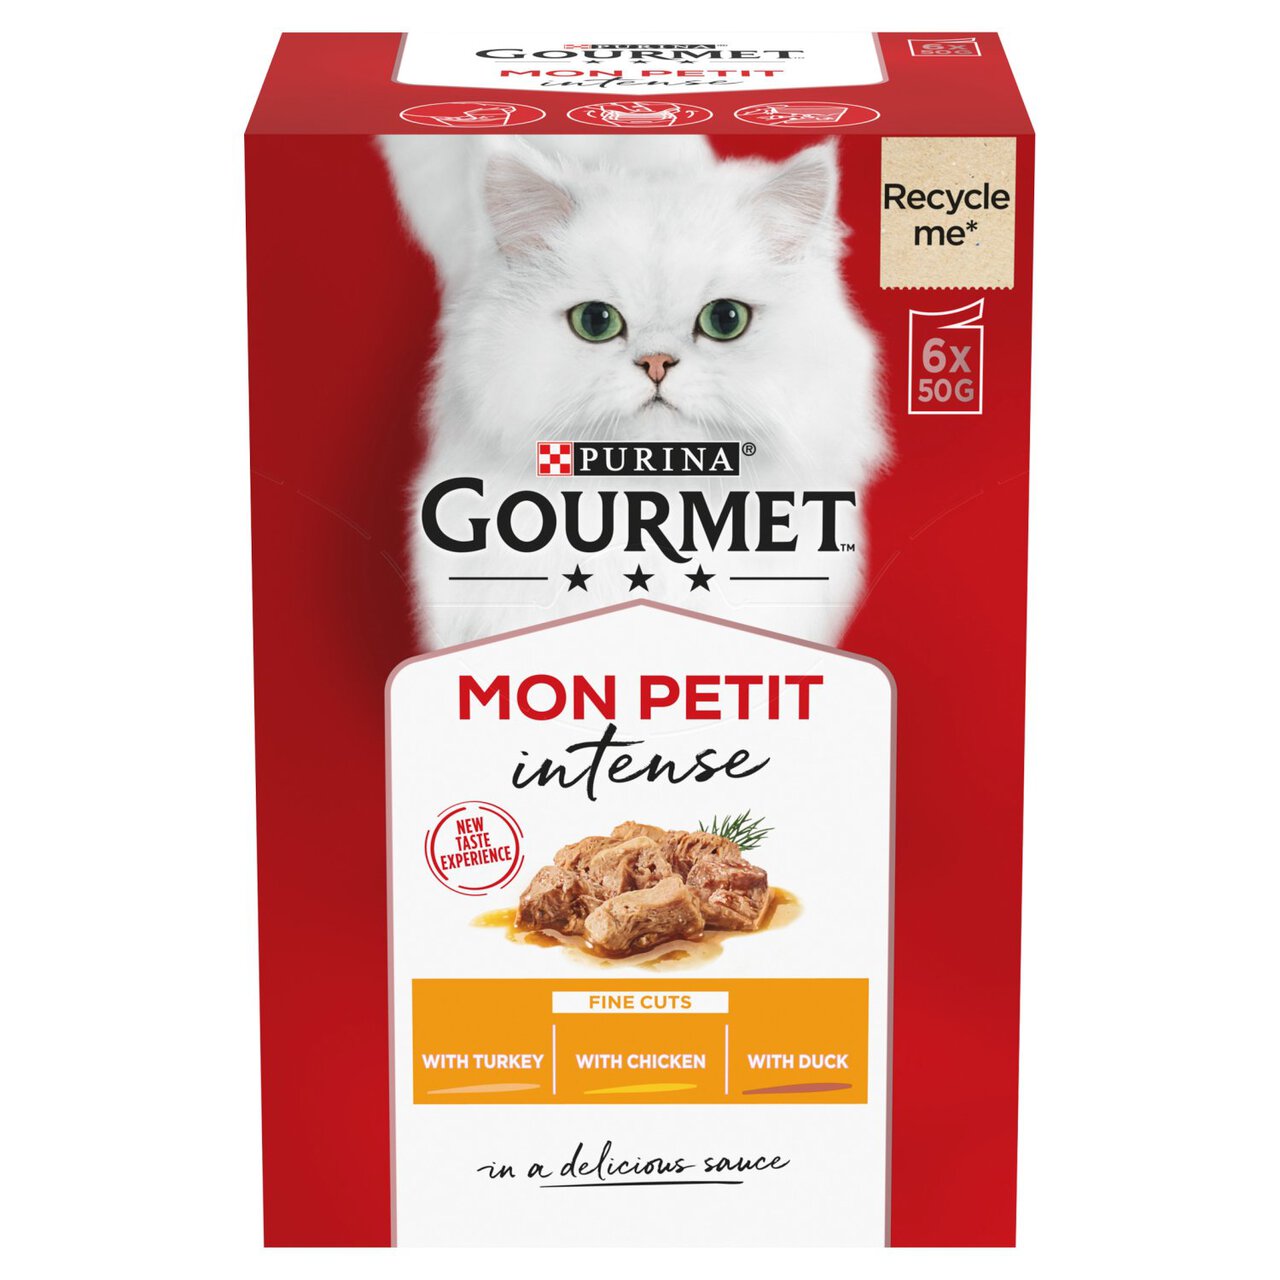 Gourmet Mon Petit Cat Food Pouches Poultry 6 x 50g 6 x 50g